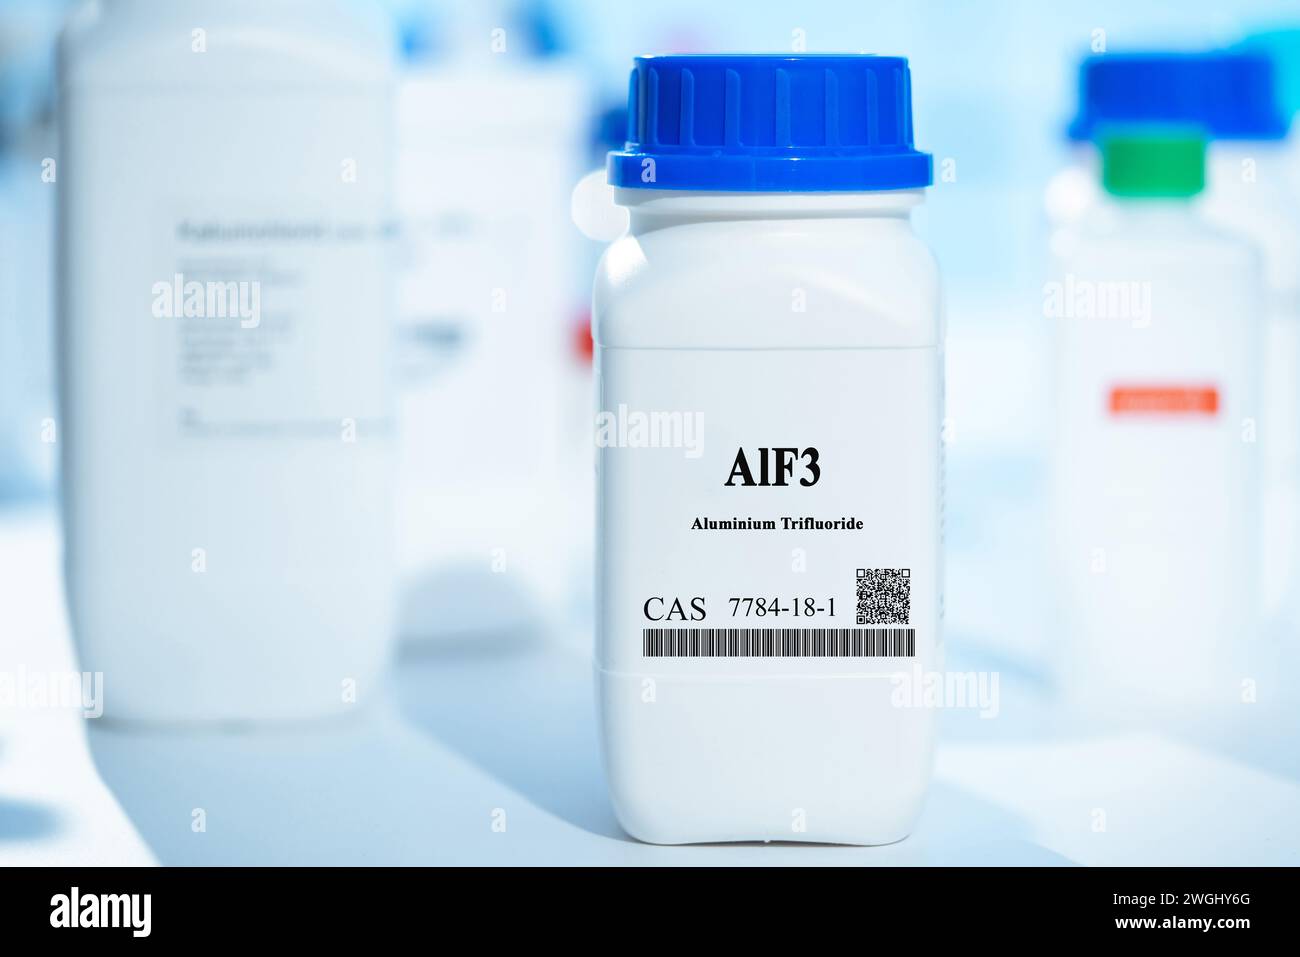 AlF3 trifluoruro de aluminio CAS 7784-18-1 sustancia química en envases de laboratorio de plástico blanco Foto de stock